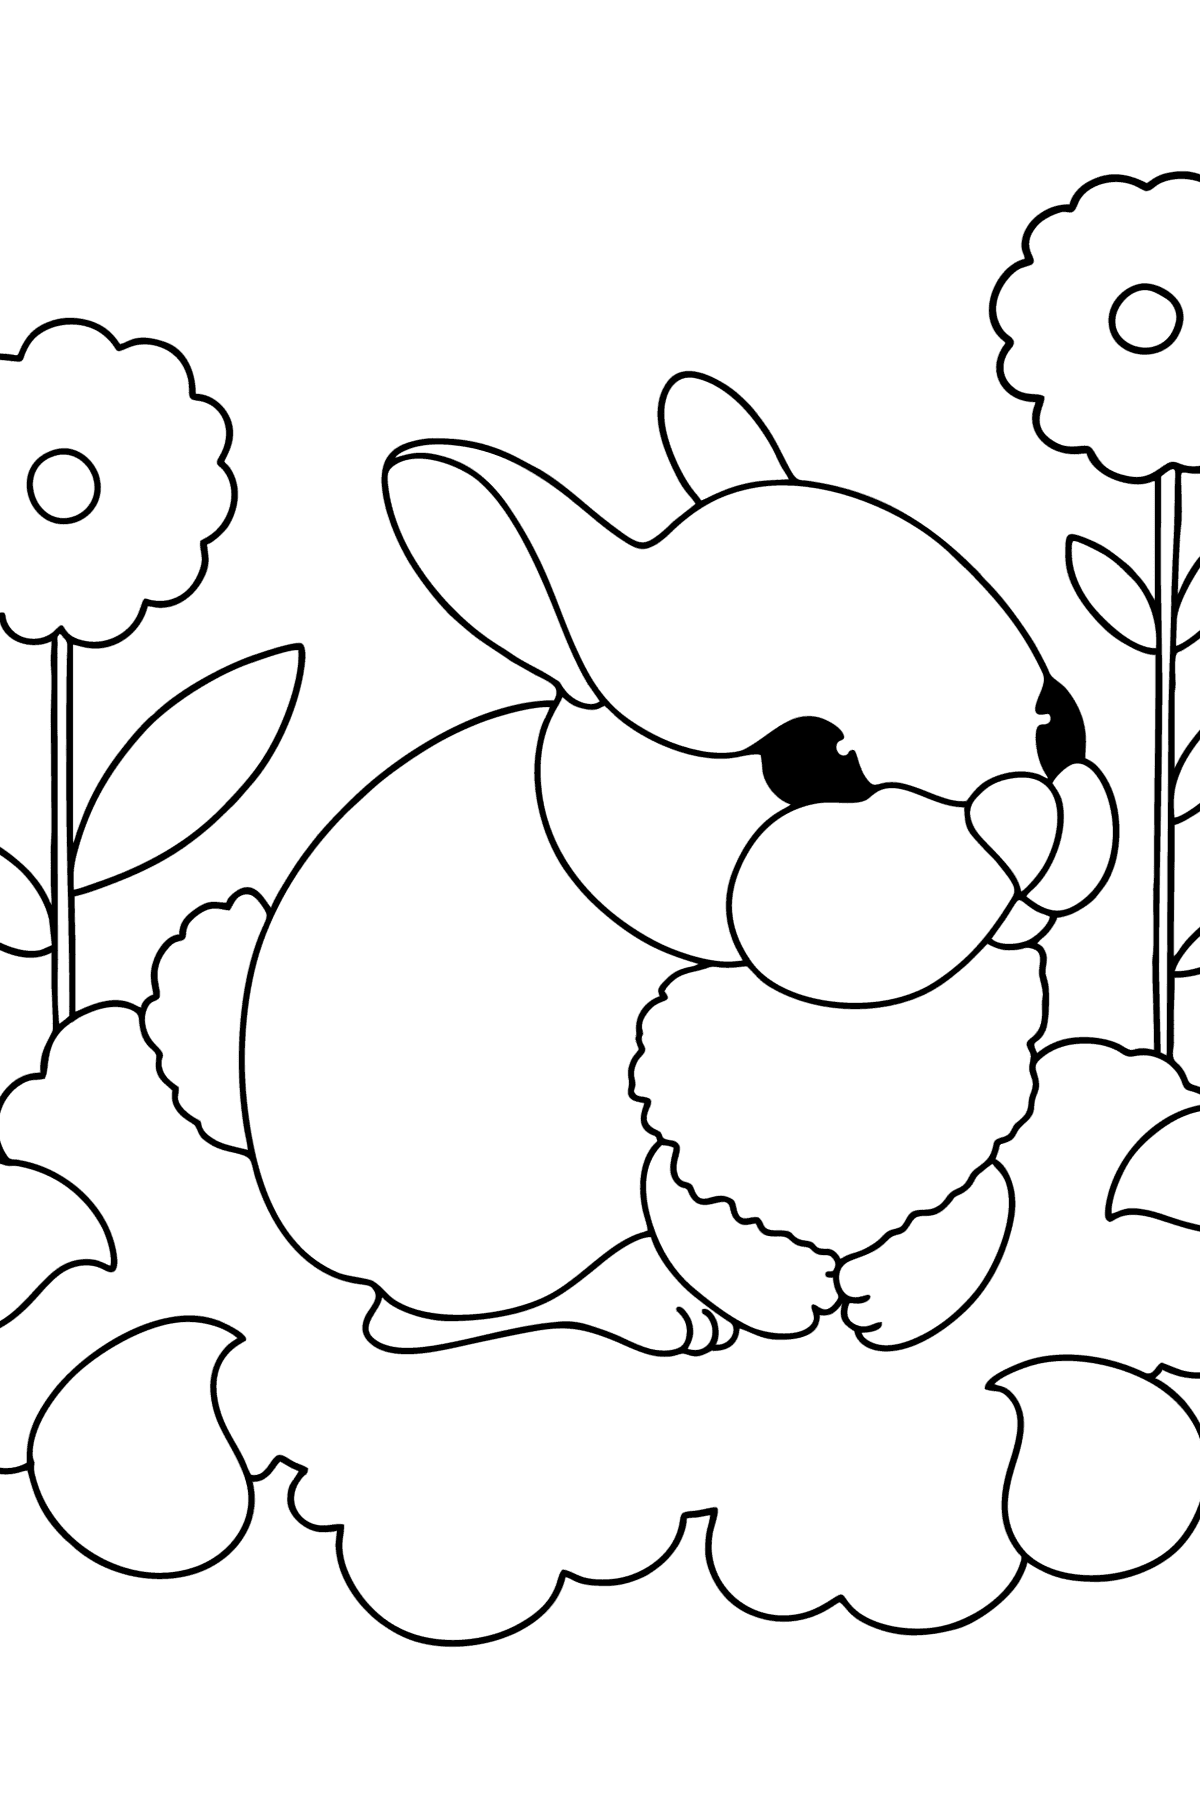 Dibujo de Conejito para colorear - Dibujos para Colorear para Niños